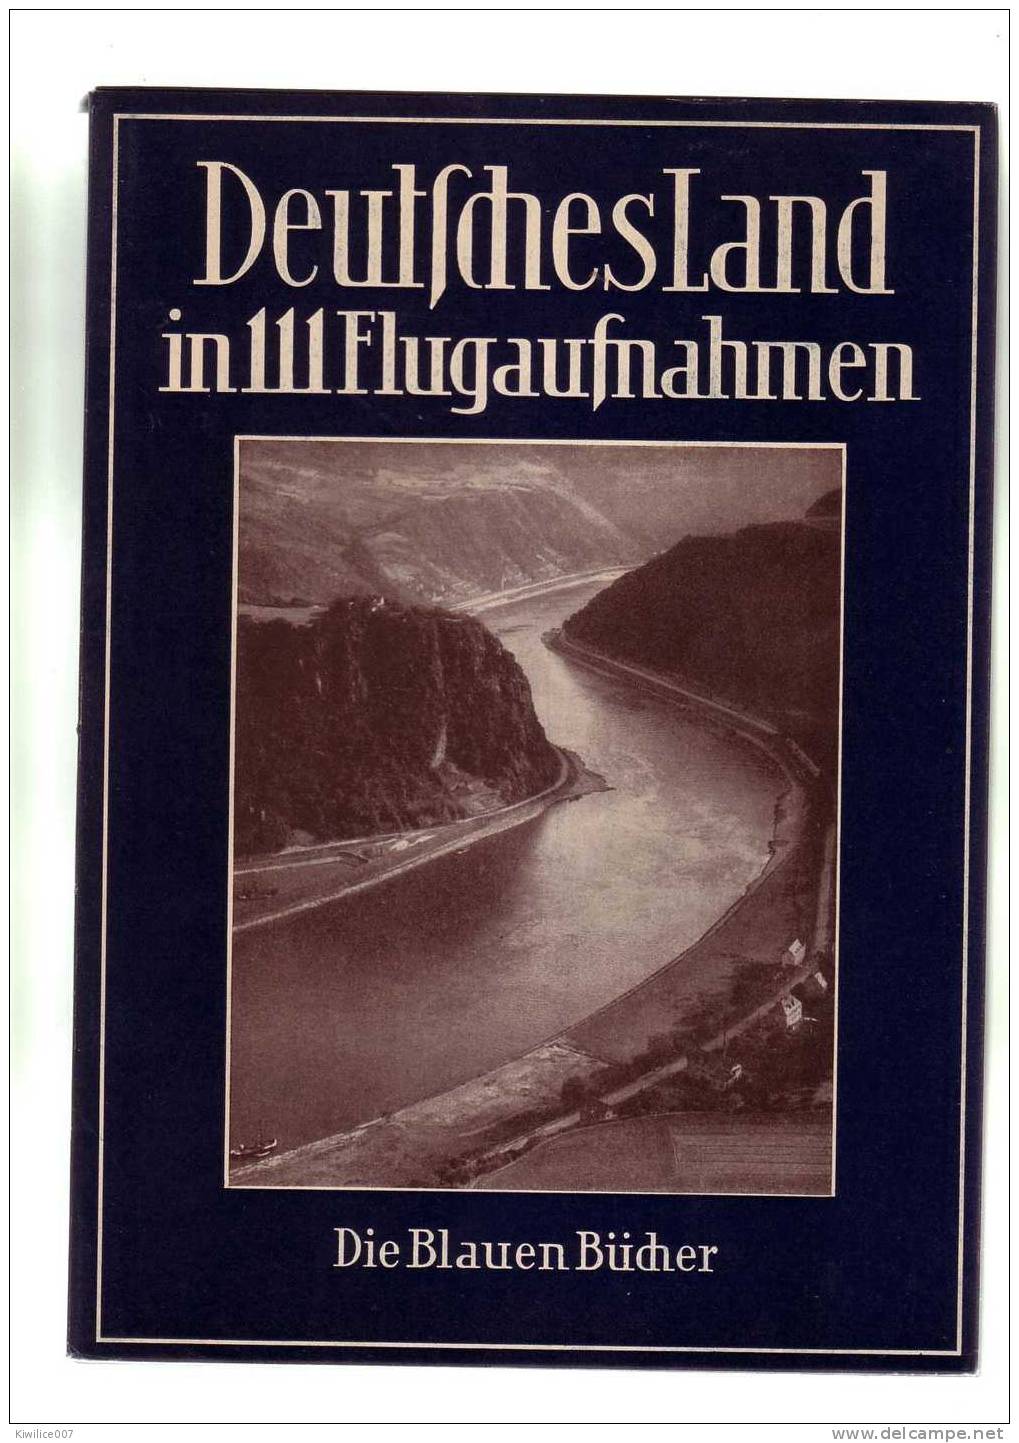 Deutsches Land    In 111 Flugaufnahmen  Karl Robert   Die Blauen Bucher - Alte Bücher